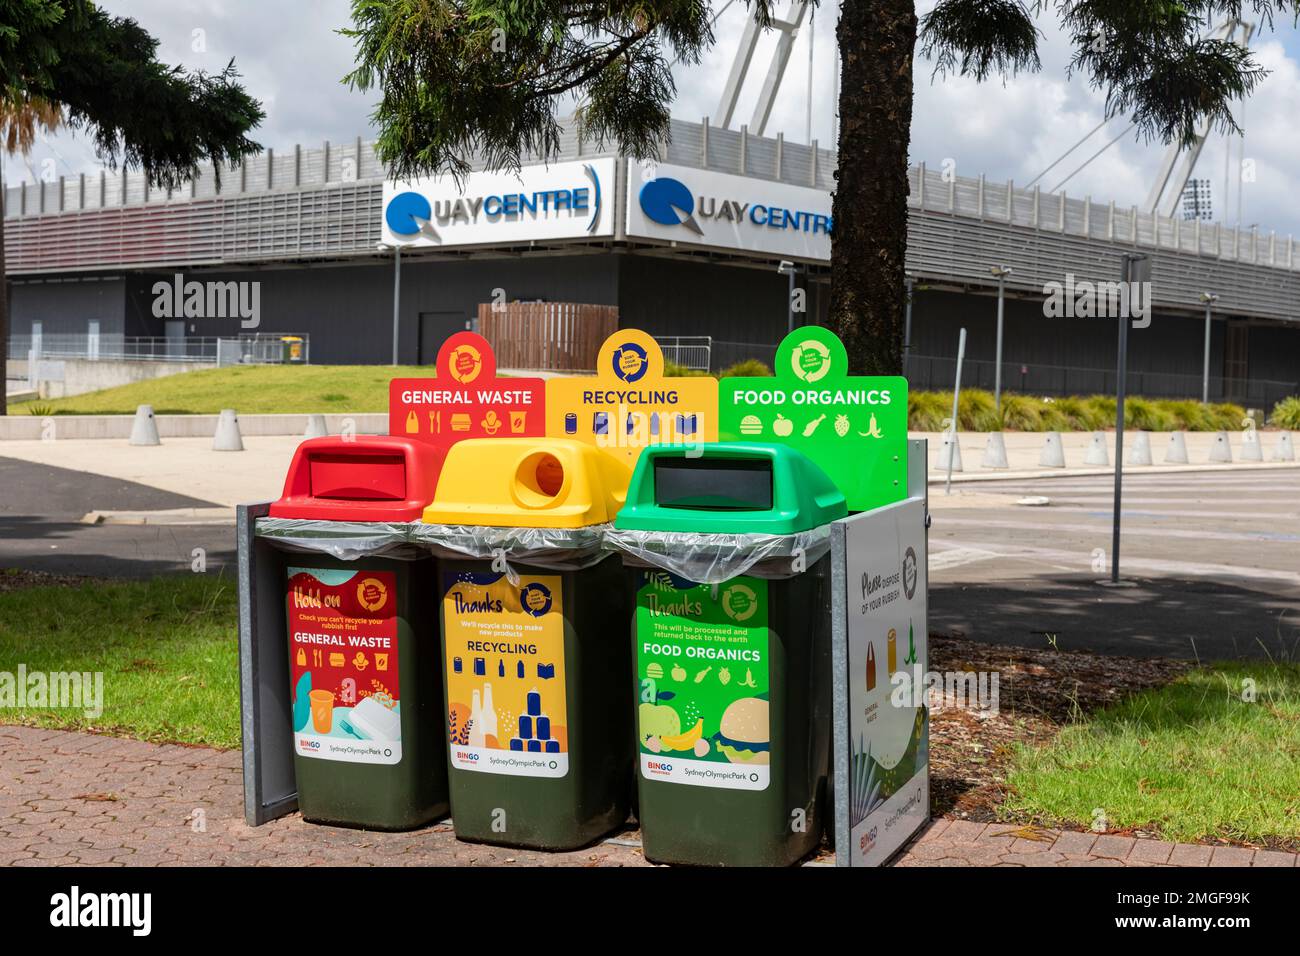 Recyclingbehälter, Sydney Olympic Park, Recycling von organischen Lebensmitteln, Recycling von Glas und Dosen und Abfallbehälter für allgemeine Zwecke, Australien Stockfoto